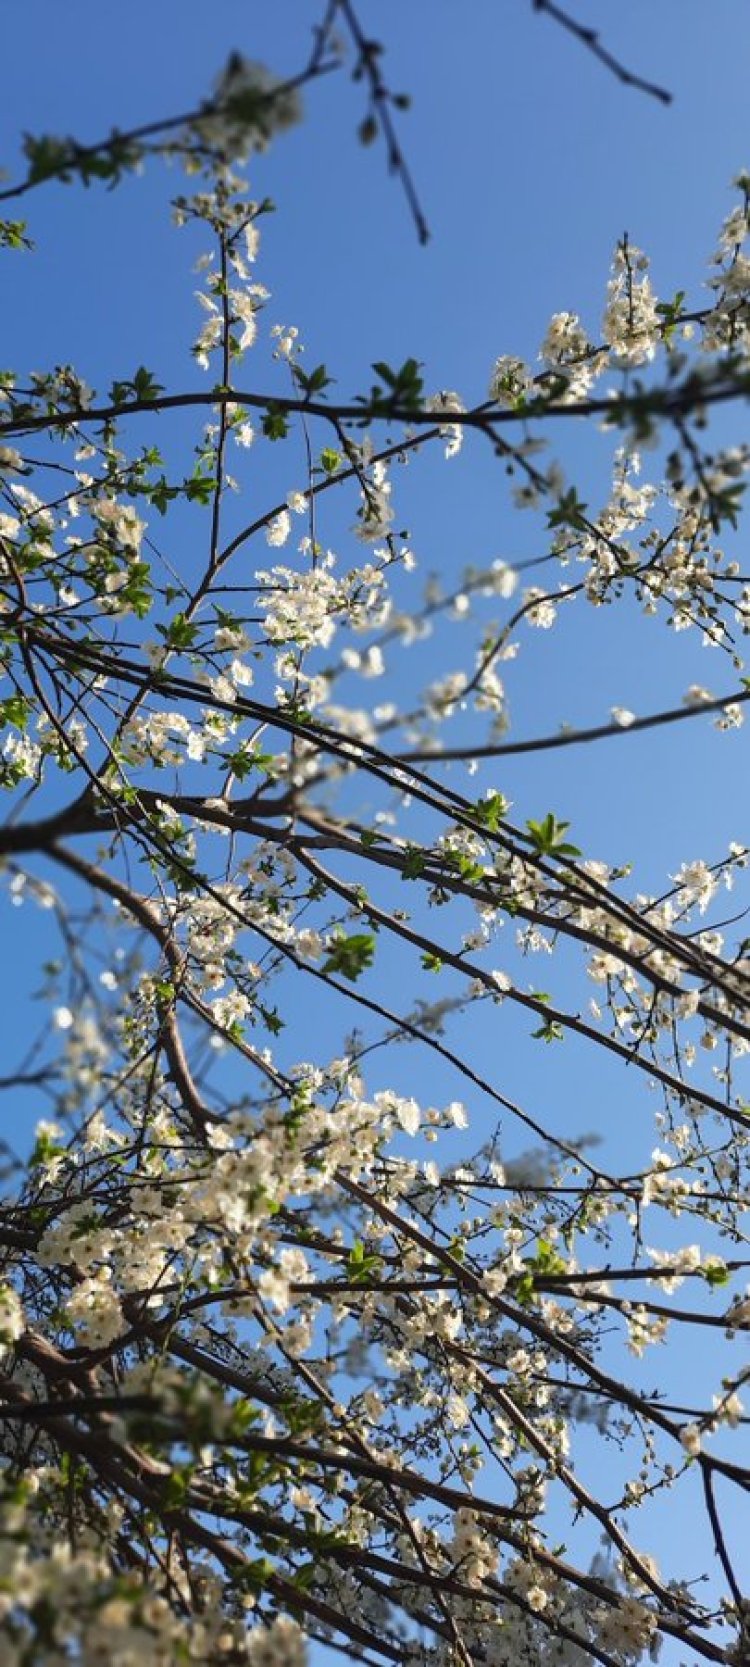 Baharı selamlayan ağaca bak